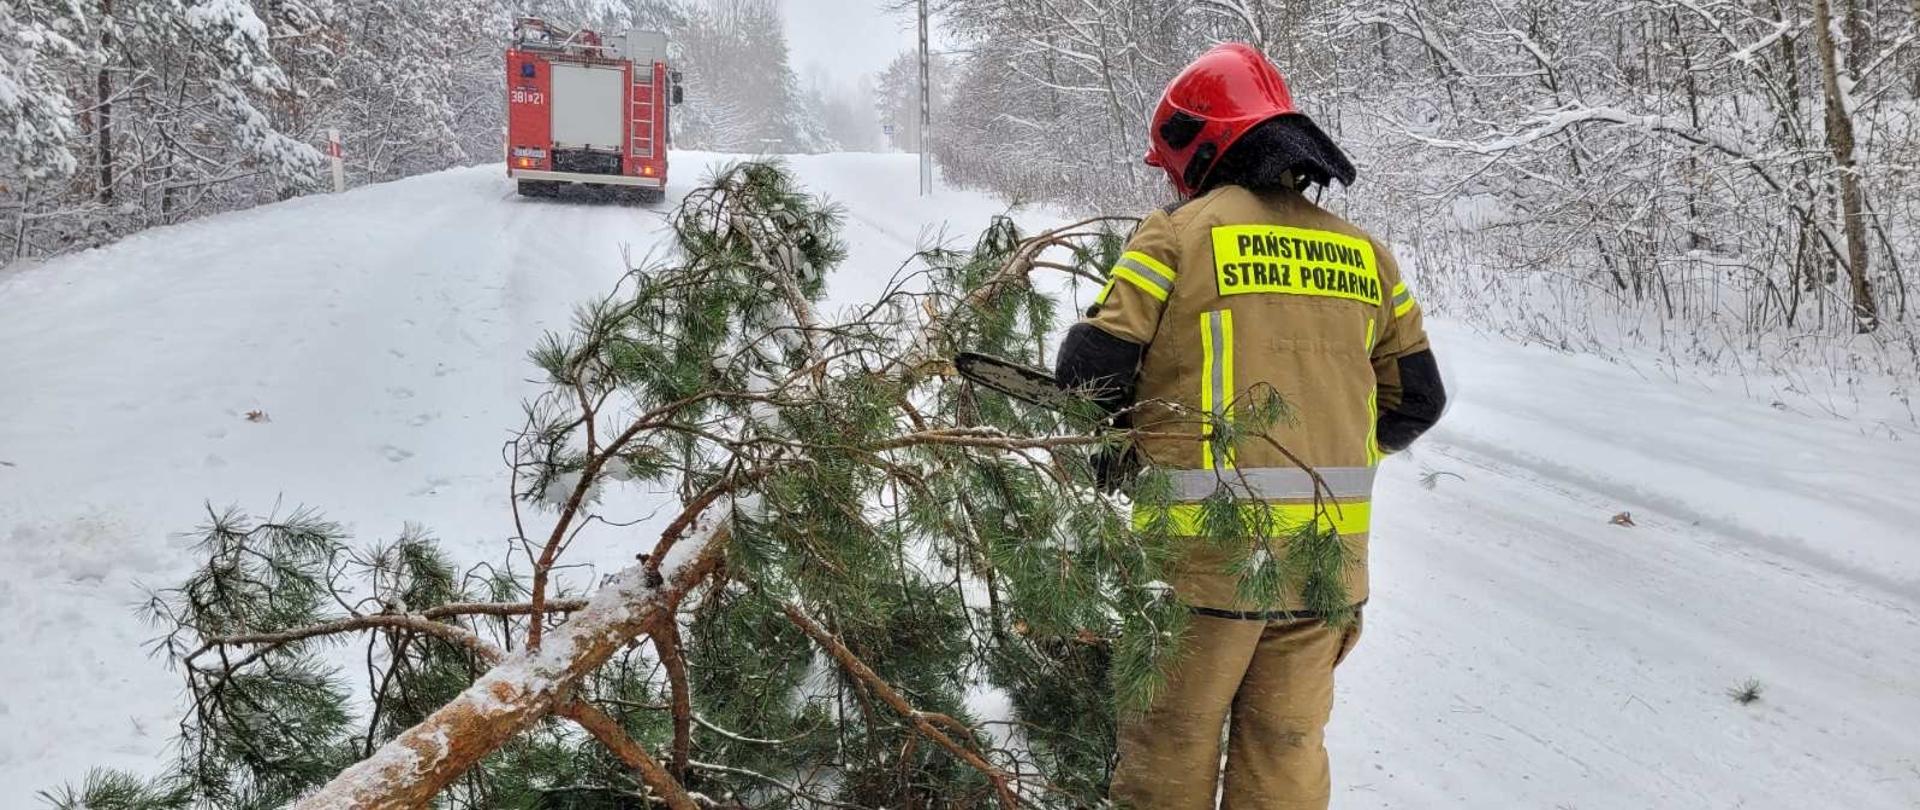 W zimowej scenerii, przy przewrócony drzewie stoi strażak w umundurowaniu specjalnym, który trzyma pilarkę do drewna. W oddali widoczny samochód ratowniczo-gaśniczy.